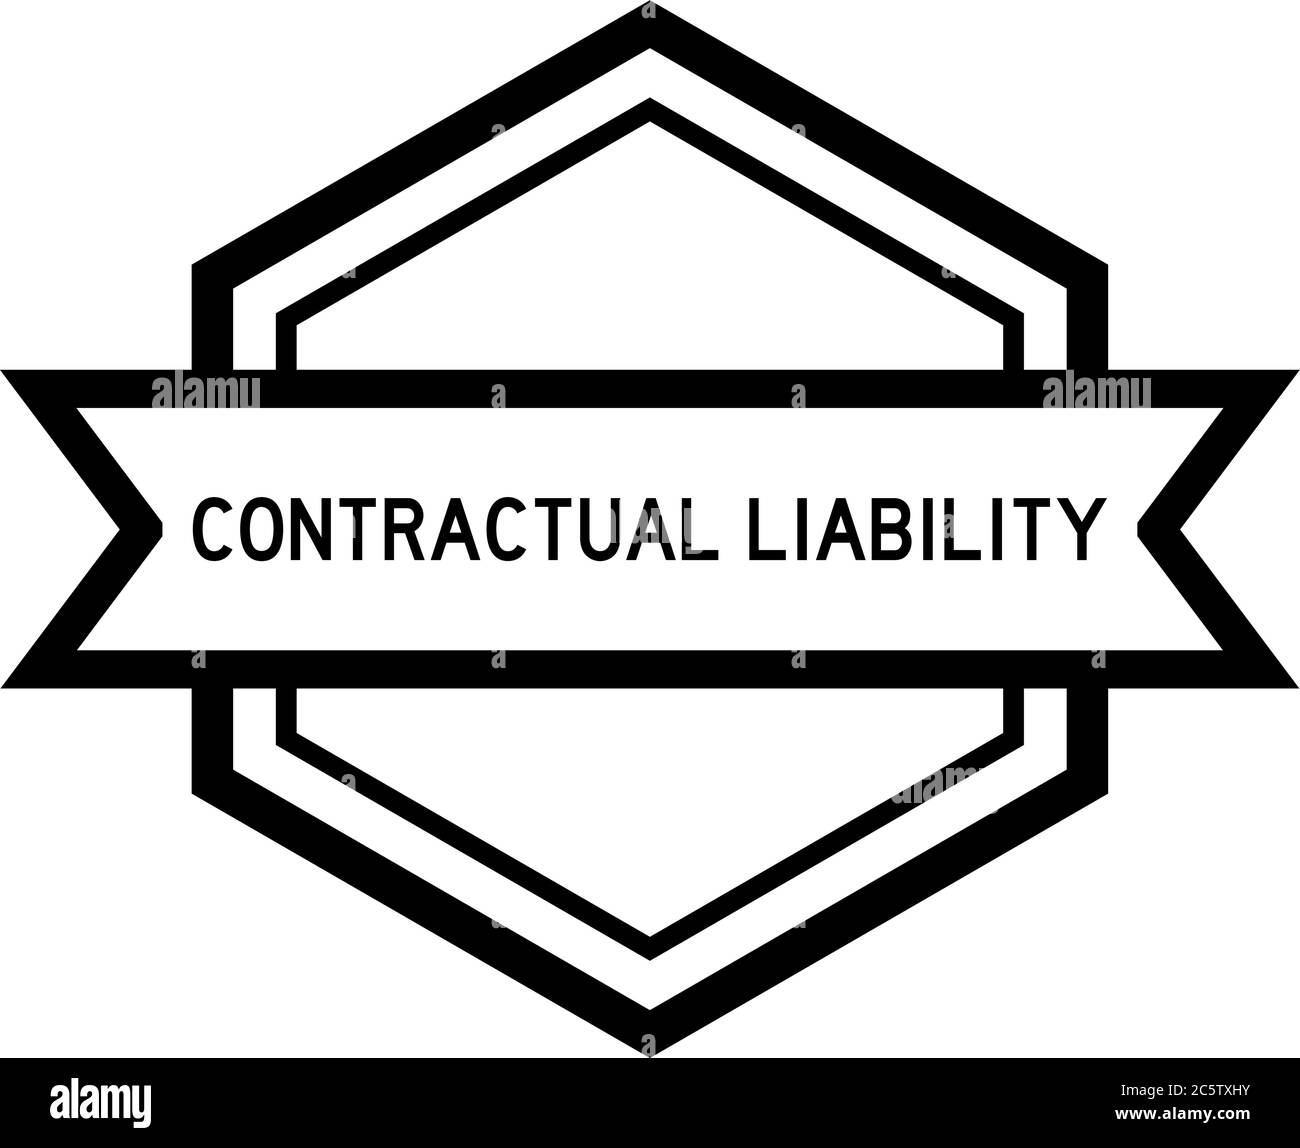 Bannière d'étiquette hexagonale de couleur noire vintage avec mot responsabilité contractuelle sur fond blanc Illustration de Vecteur